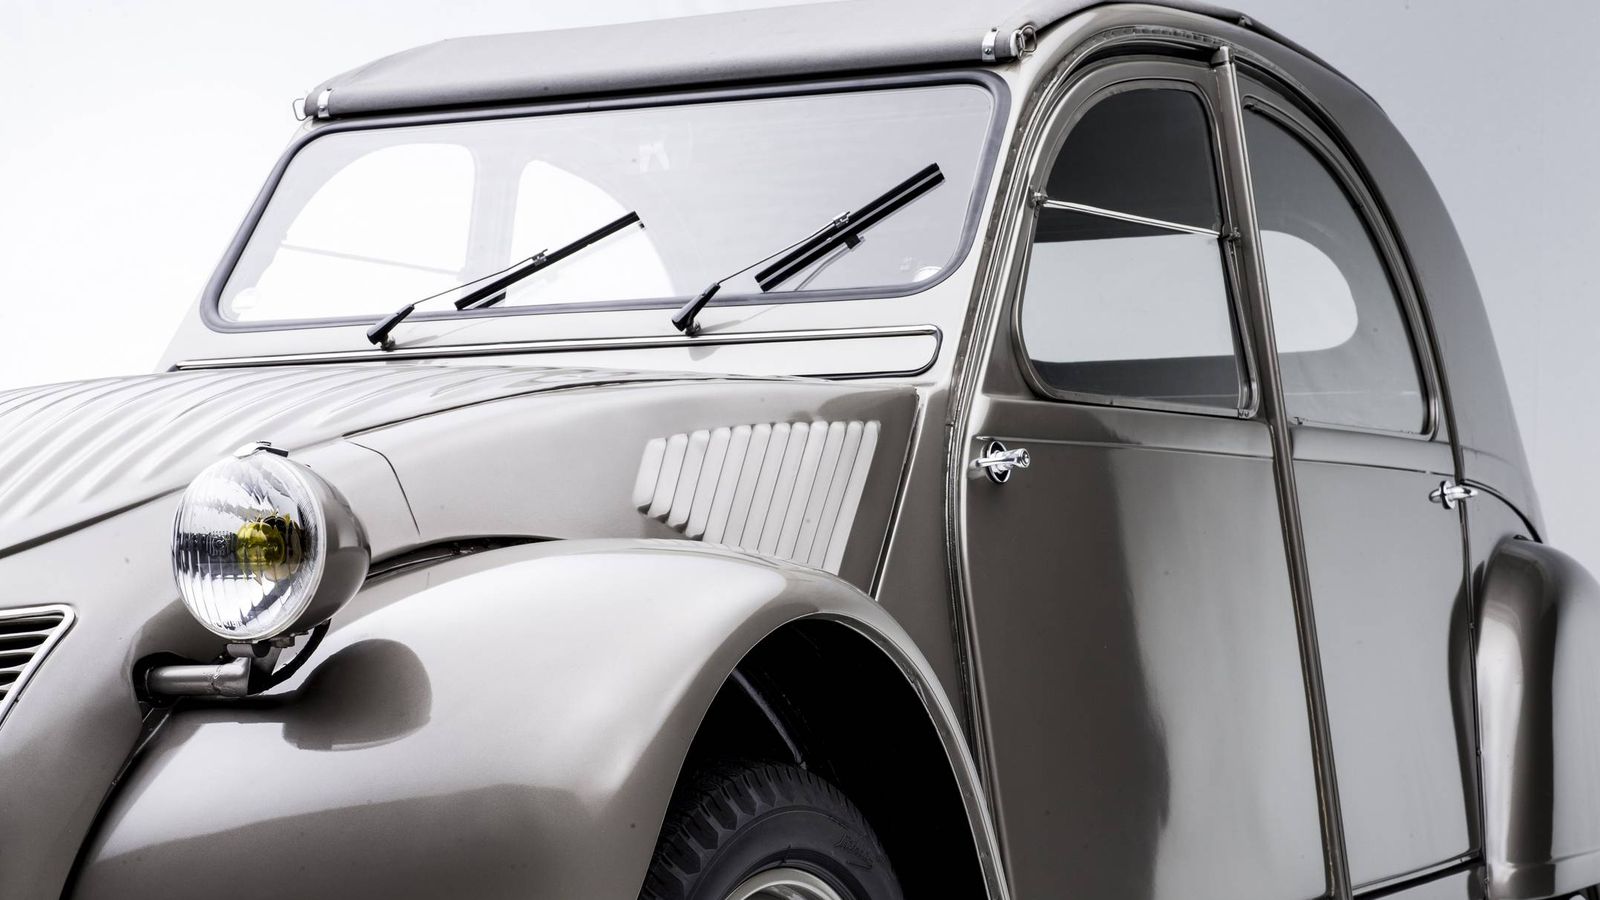 Foto: El clásico Citroën 2 CV cumple 70 años desde su lanzamiento comercial en 1948.